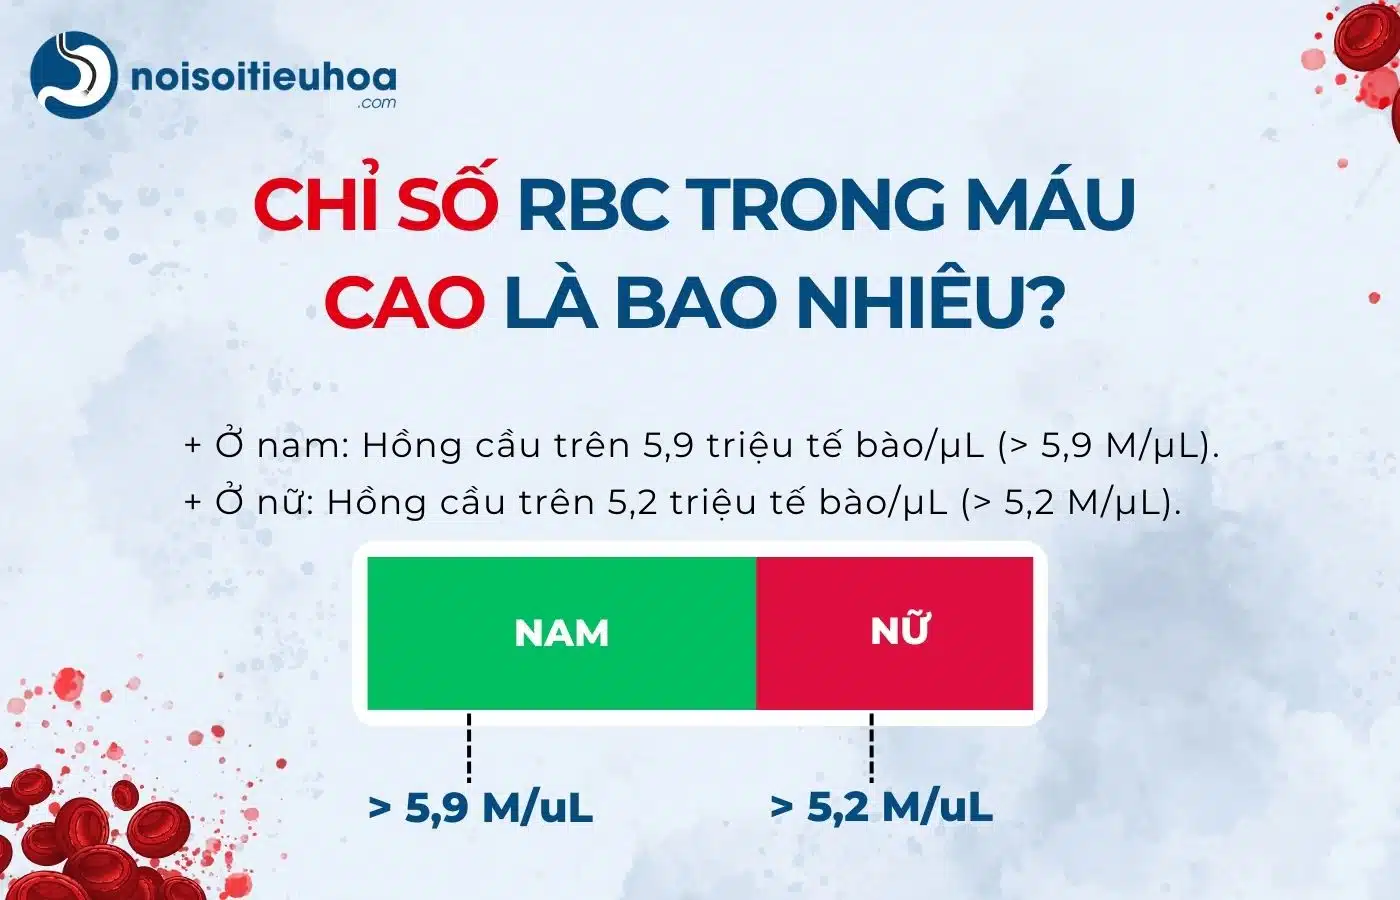 Chỉ số RBC trong máu cao là bao nhiêu?